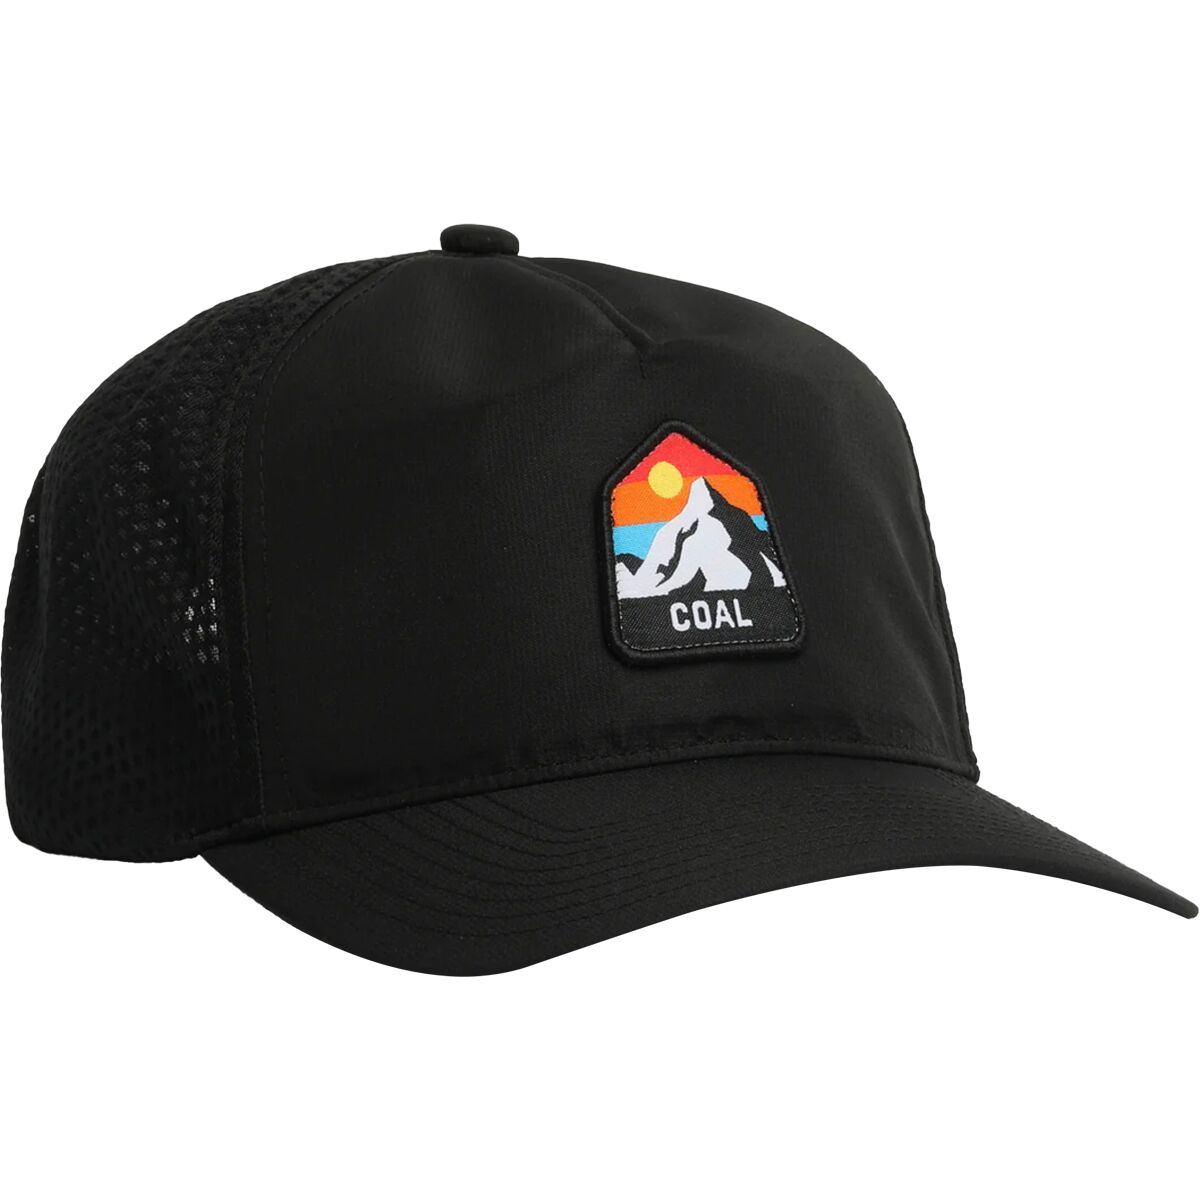 Coal Headwear The Peak Hat